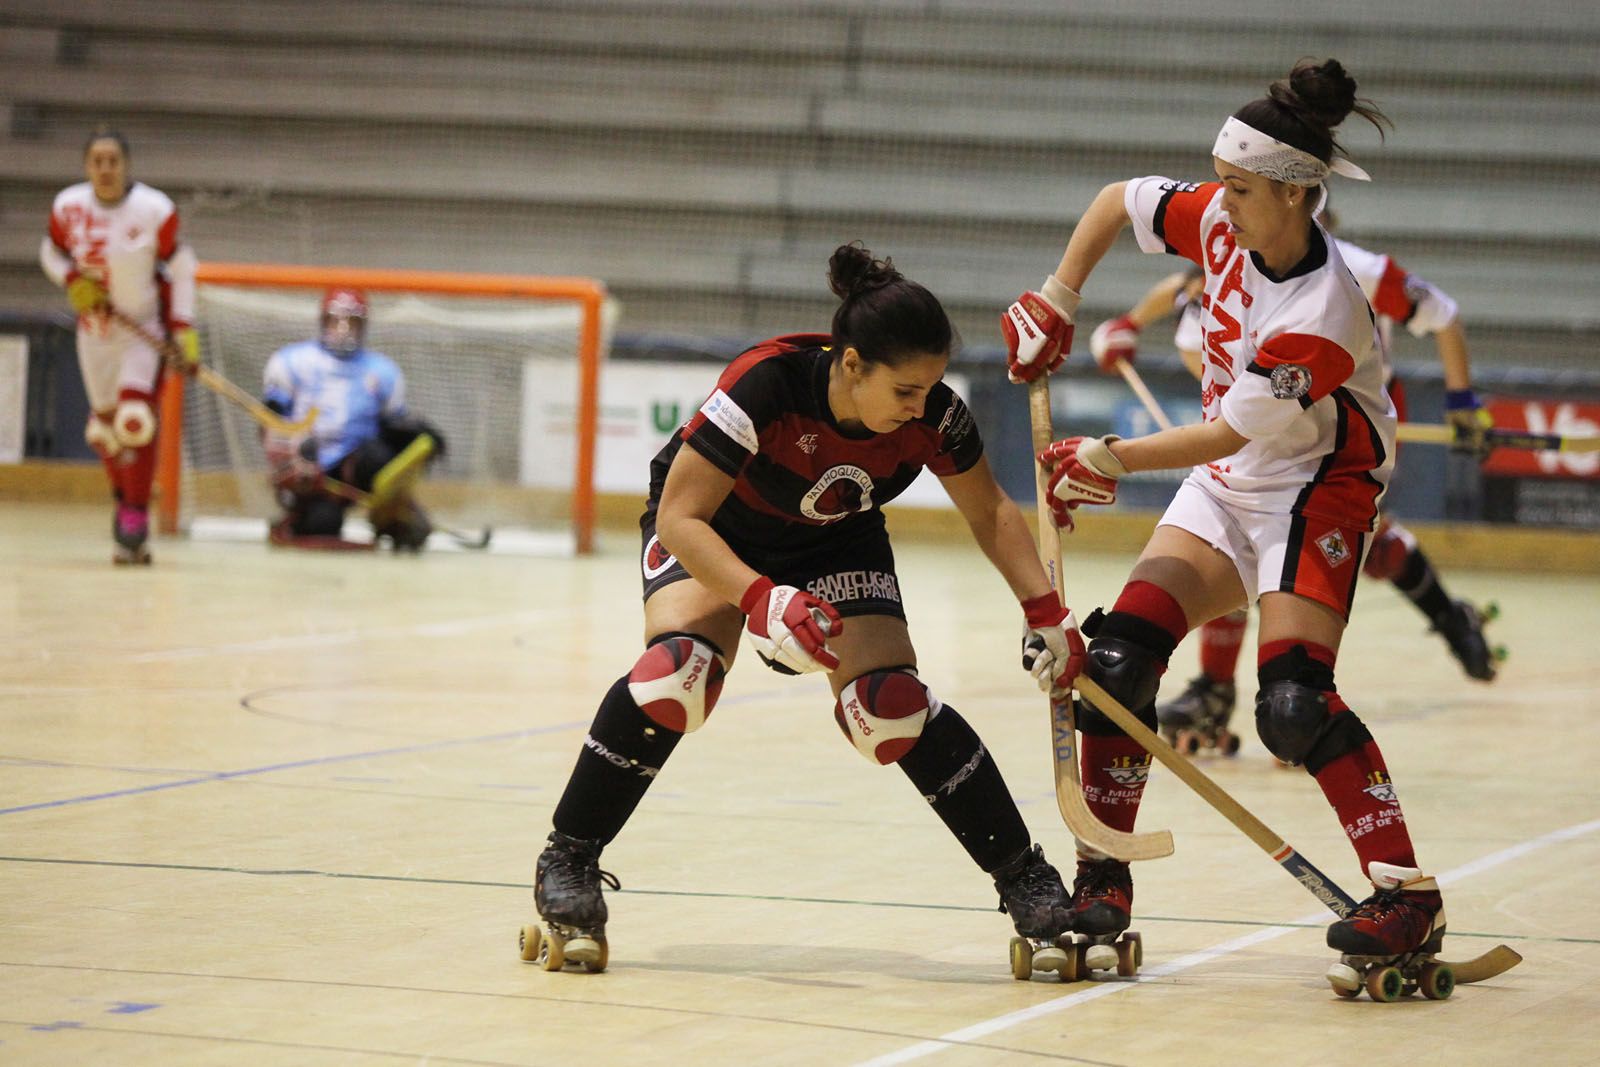 Hoquei sobre patins femení: PHC Sant Cugat vs CE Arenys de Munt a la ZEM Rambla del Celler. FOTOS: Lali Puig